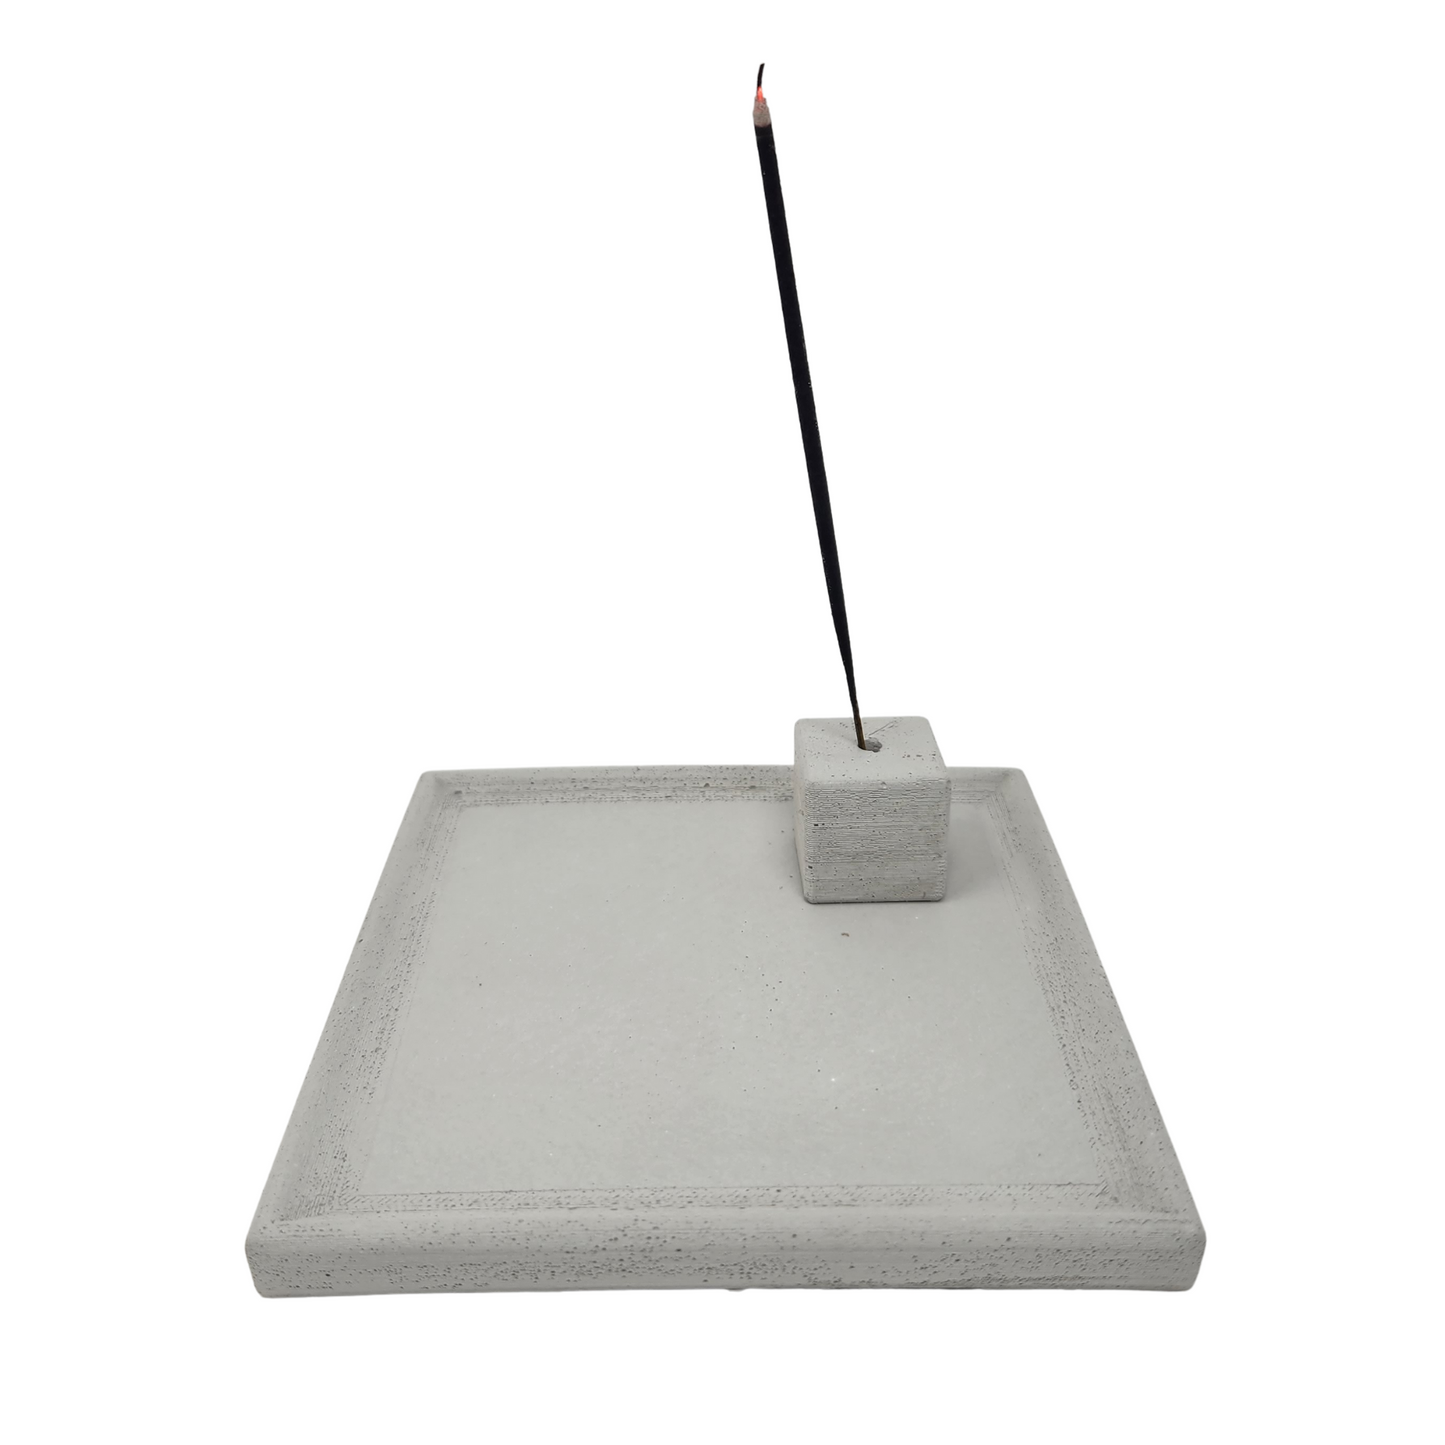 5" Incense Burner | Concrete Square Tray | Abalone